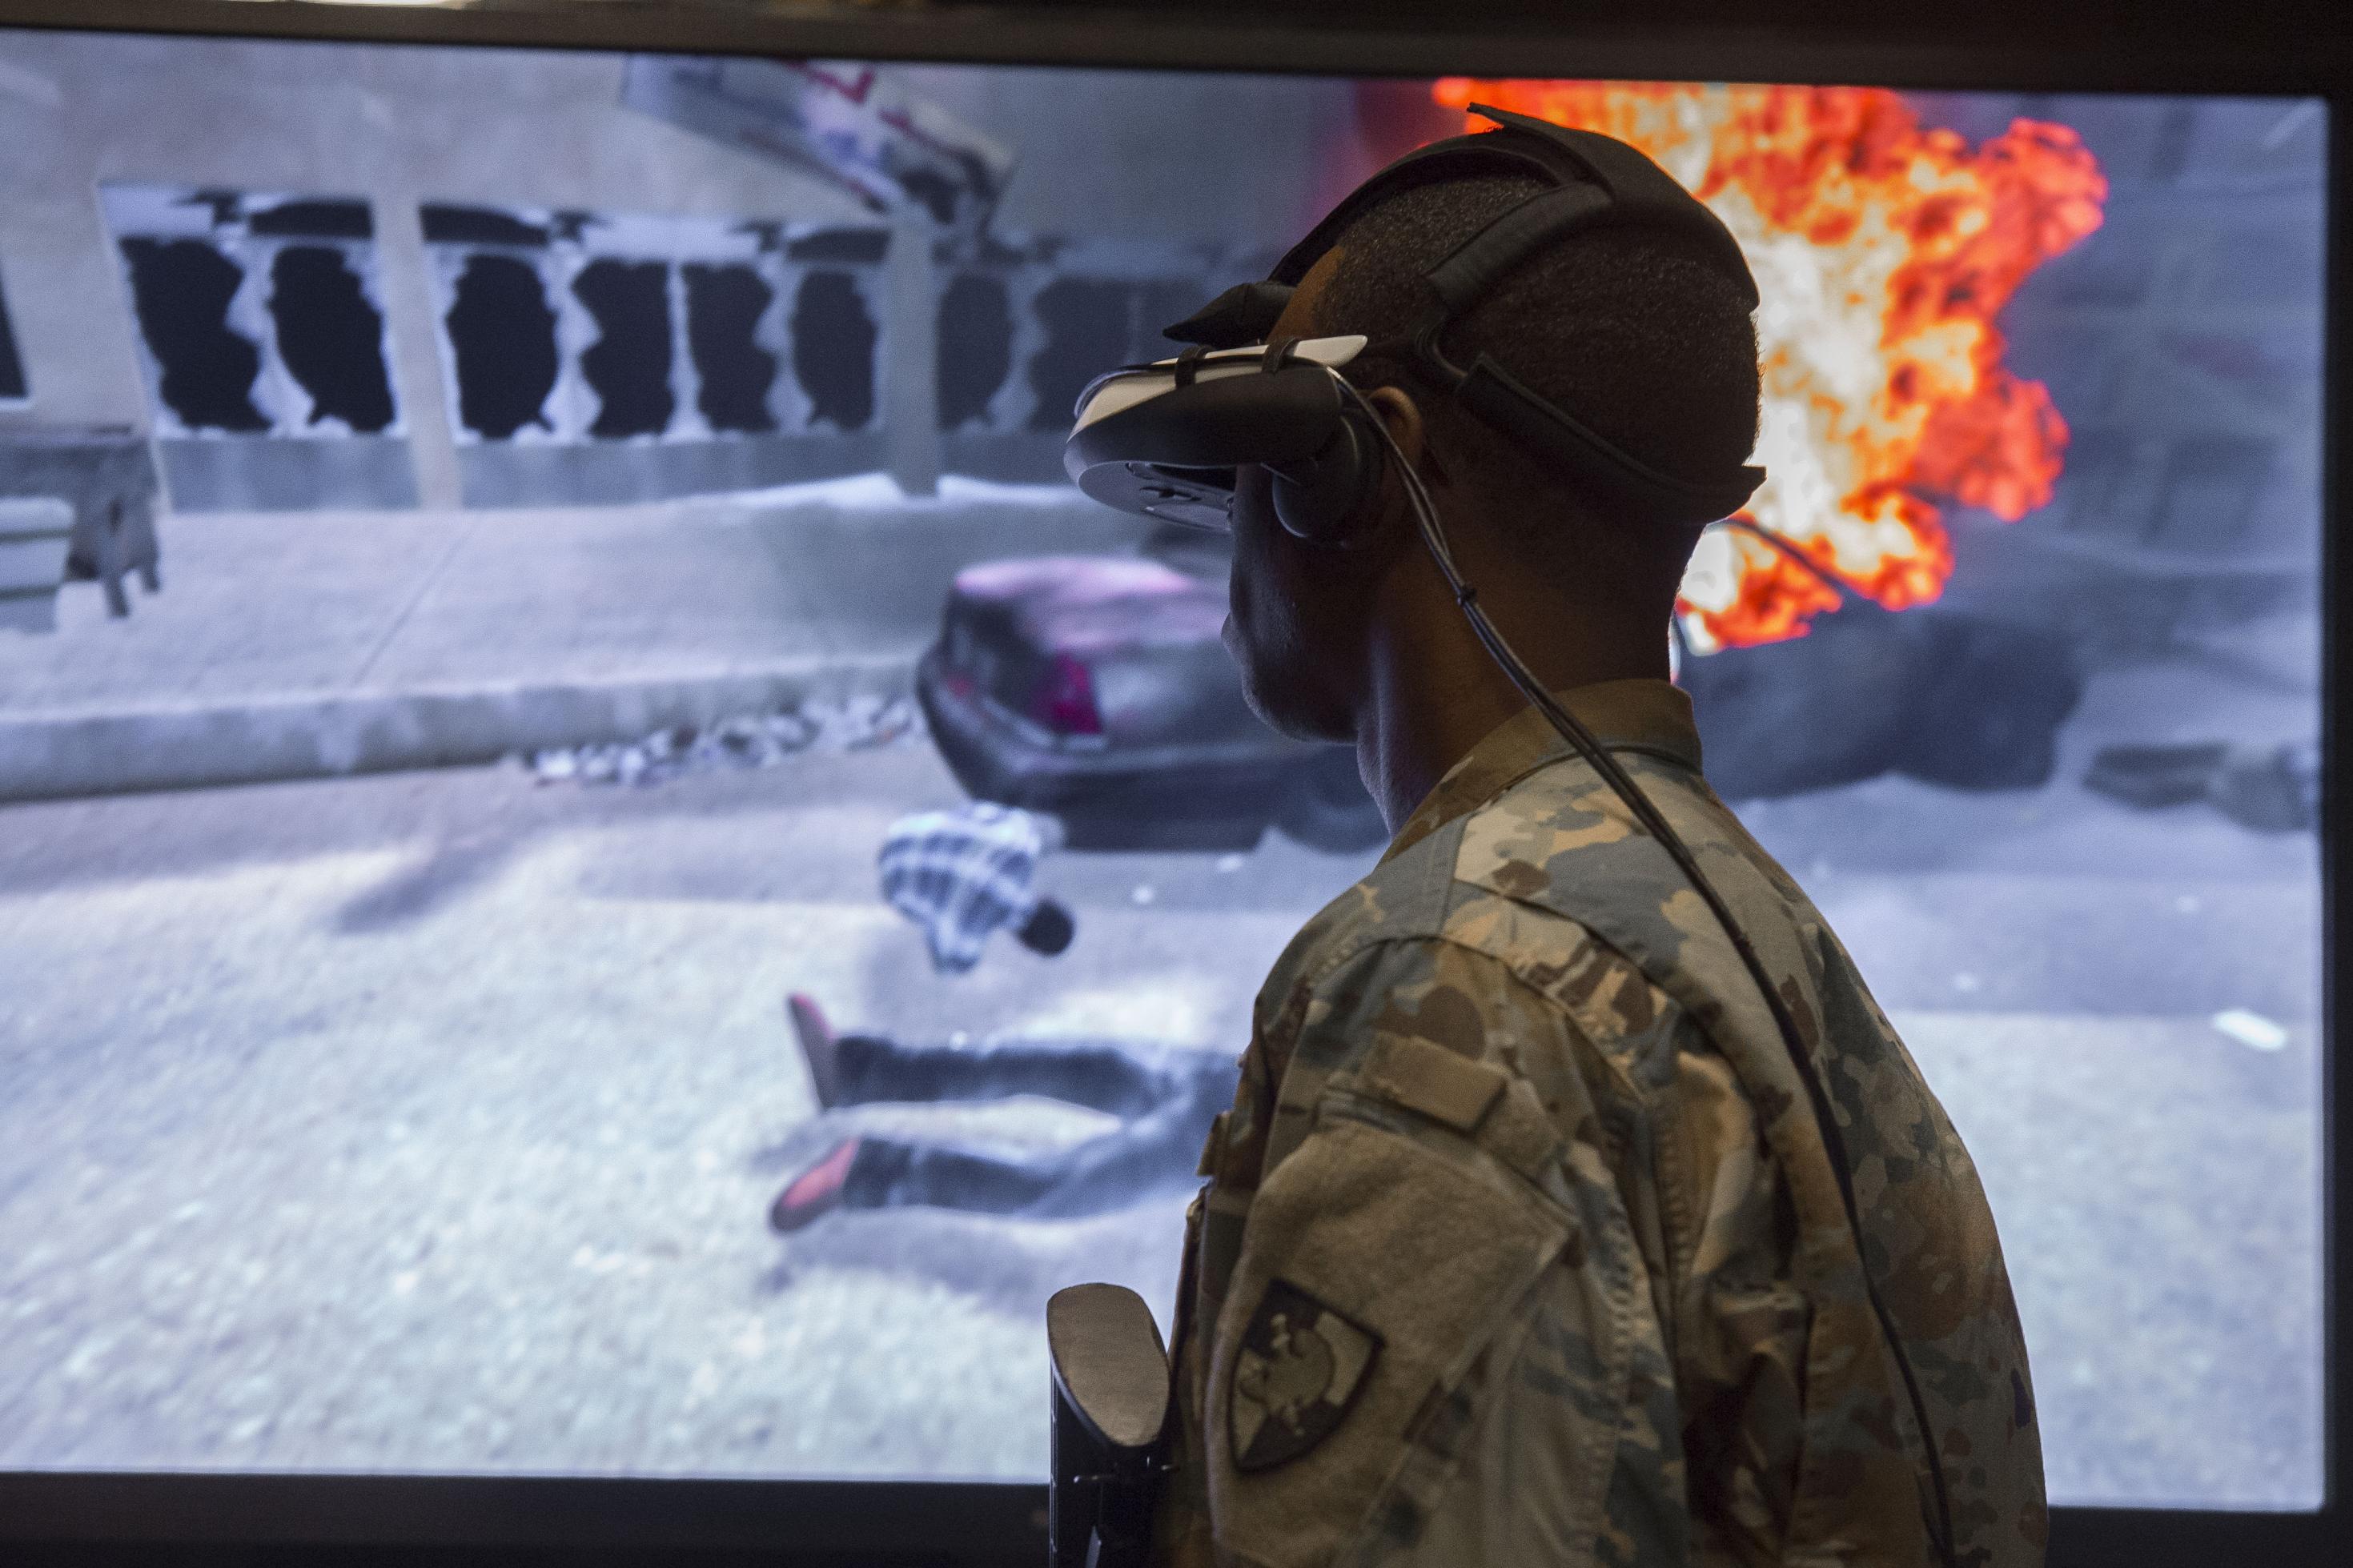 Ein Kadett des US Militärs in Tarn-Kleidung steht mit einem VR-Headset vor einem großen Monitor auf dem die virtuelle Szene eines Bombenanschlages zu sehen ist.